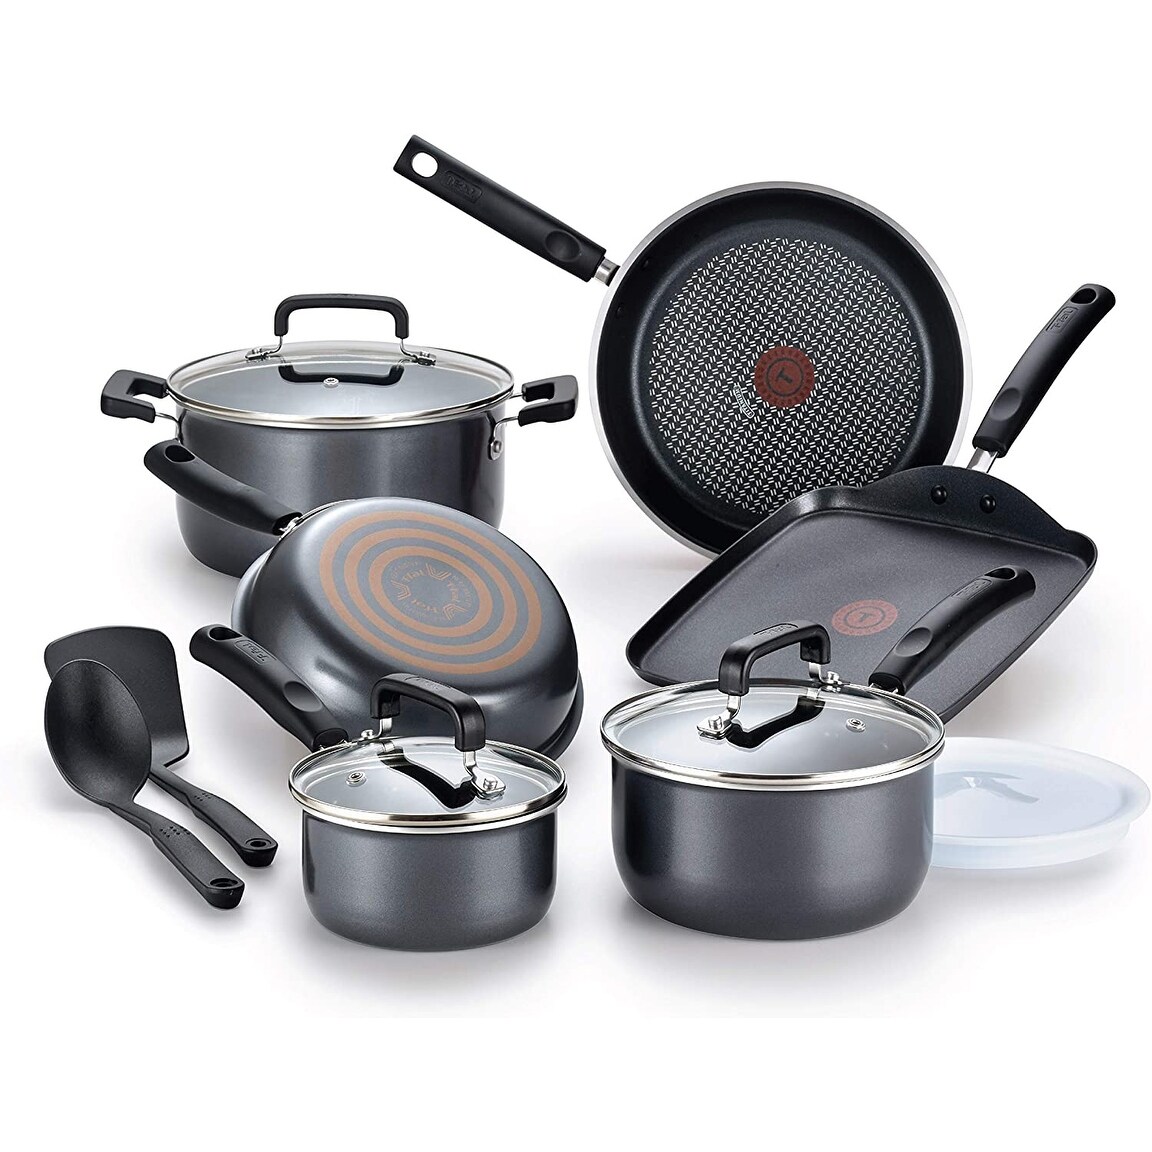 https://ak1.ostkcdn.com/images/products/is/images/direct/5d9f28d349dcb5fc3d5e51292391e4c54123c291/Nonstick-Cookware-Set-12-Piece-Pots-and-Pans%2C-Dishwasher-Safe-Black.jpg